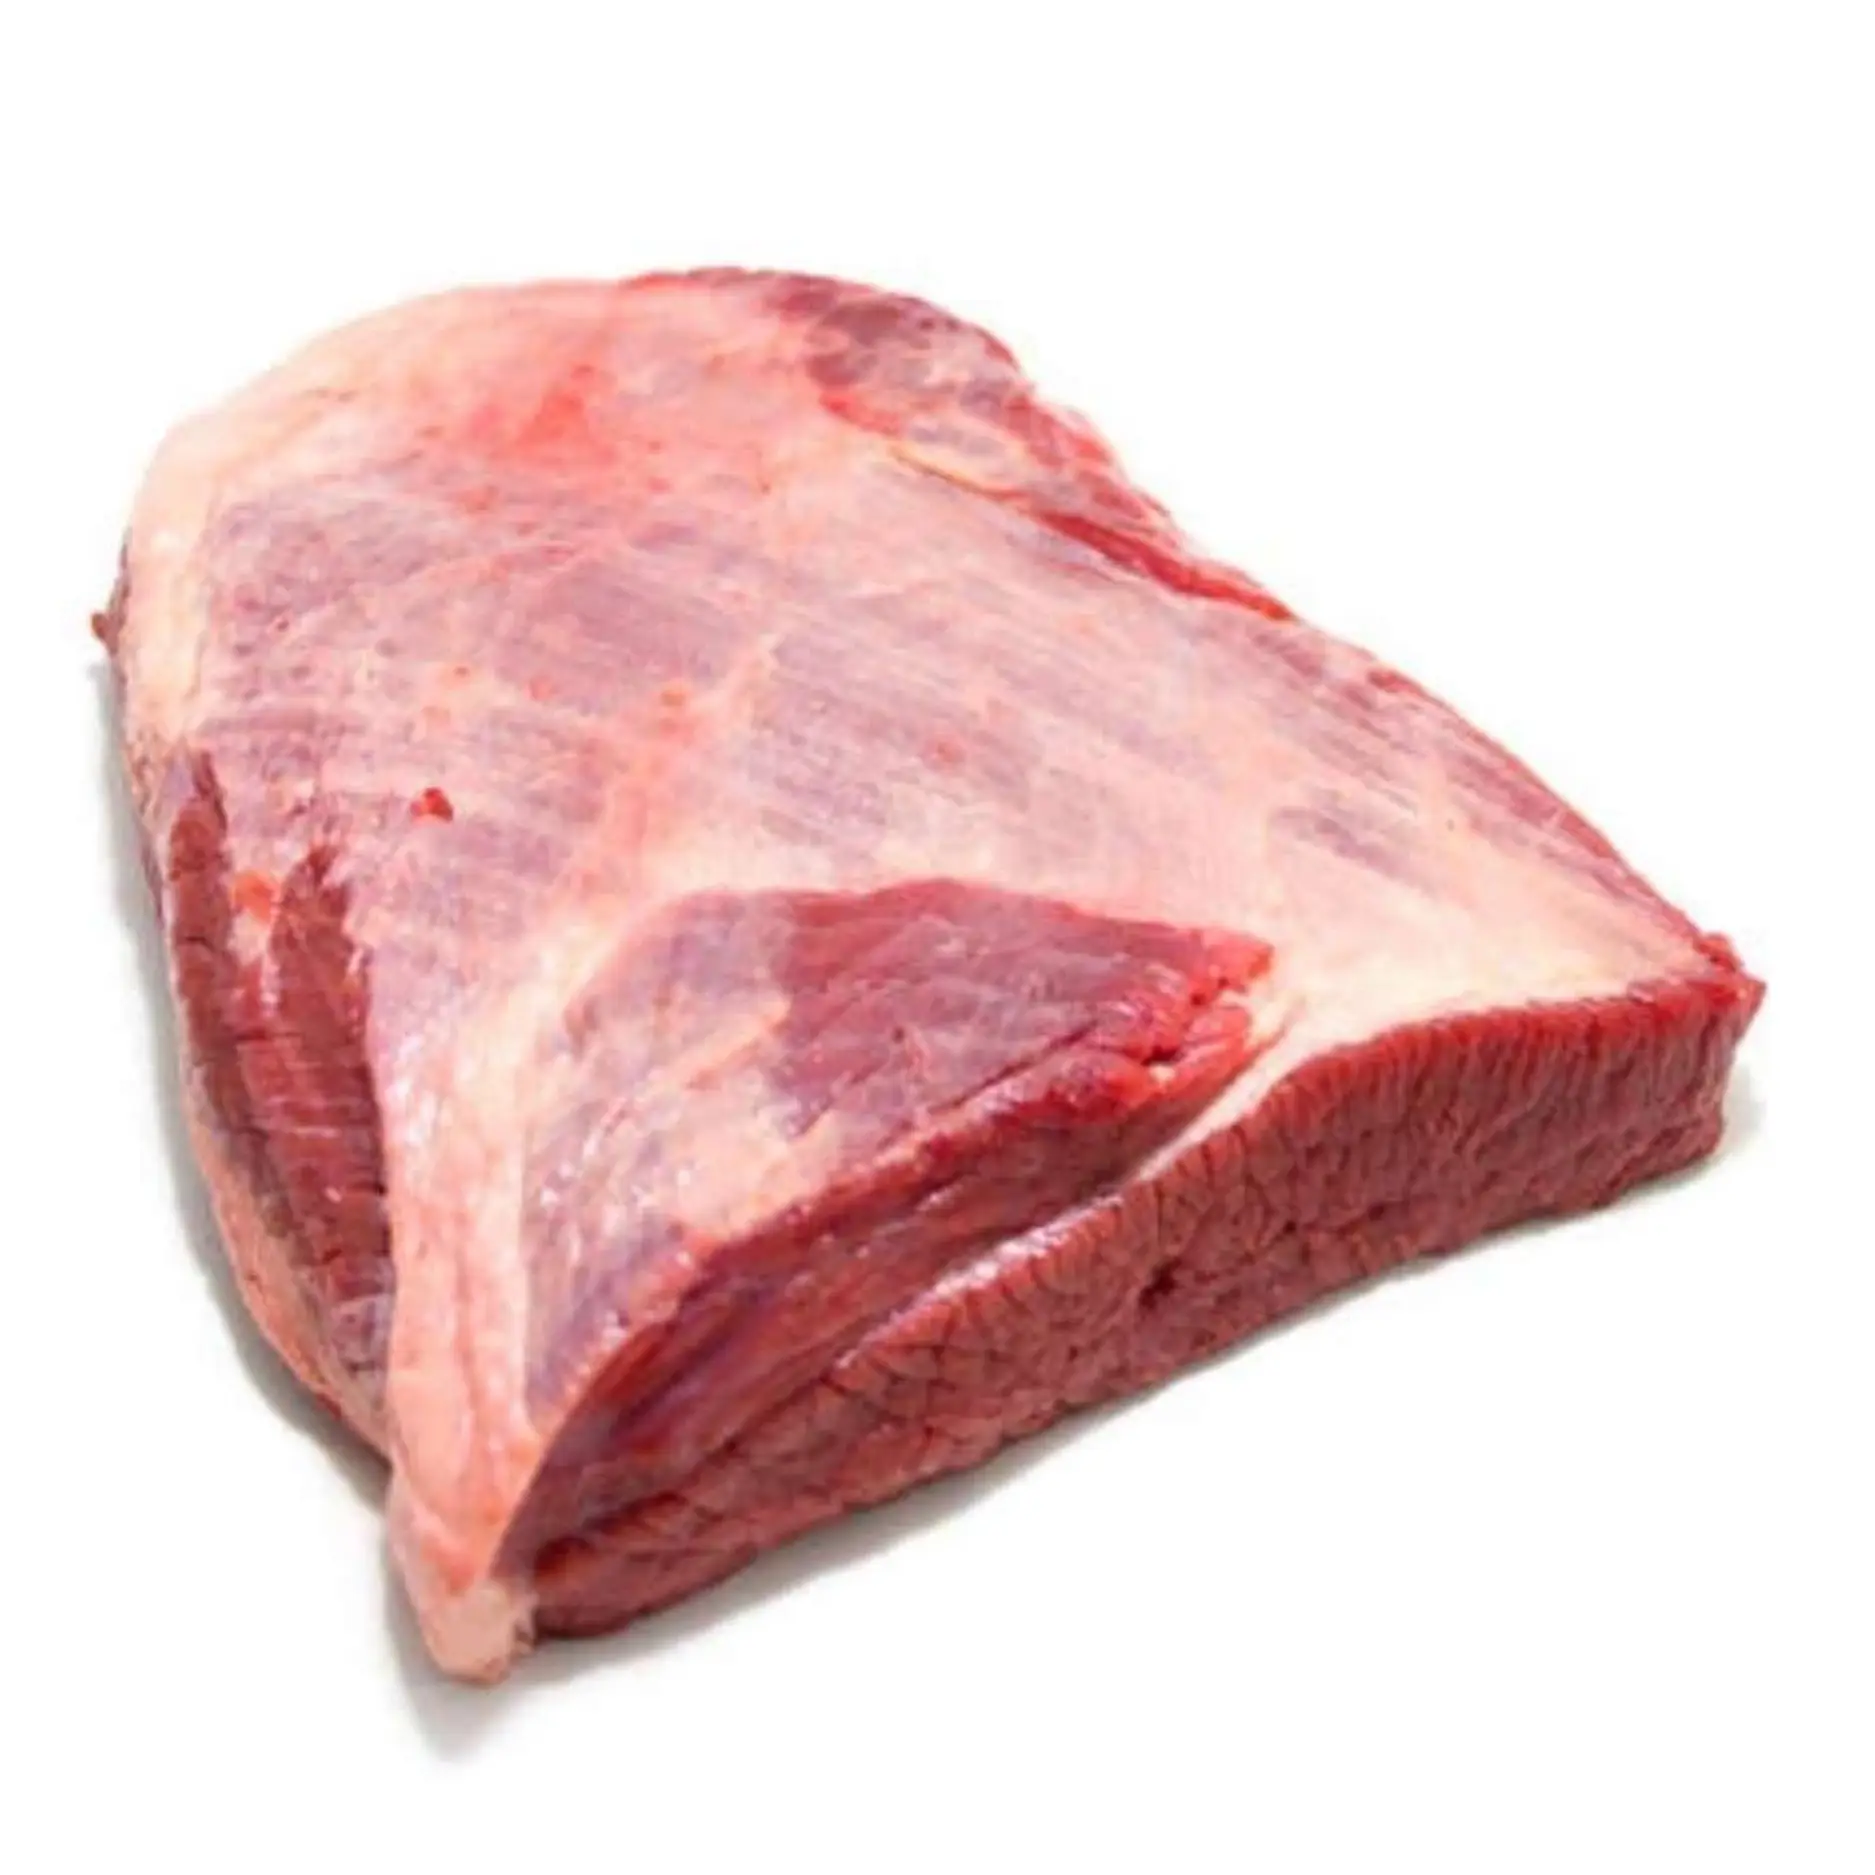 Satış için doğal ortamdan en iyi dondurulmuş sığır eti